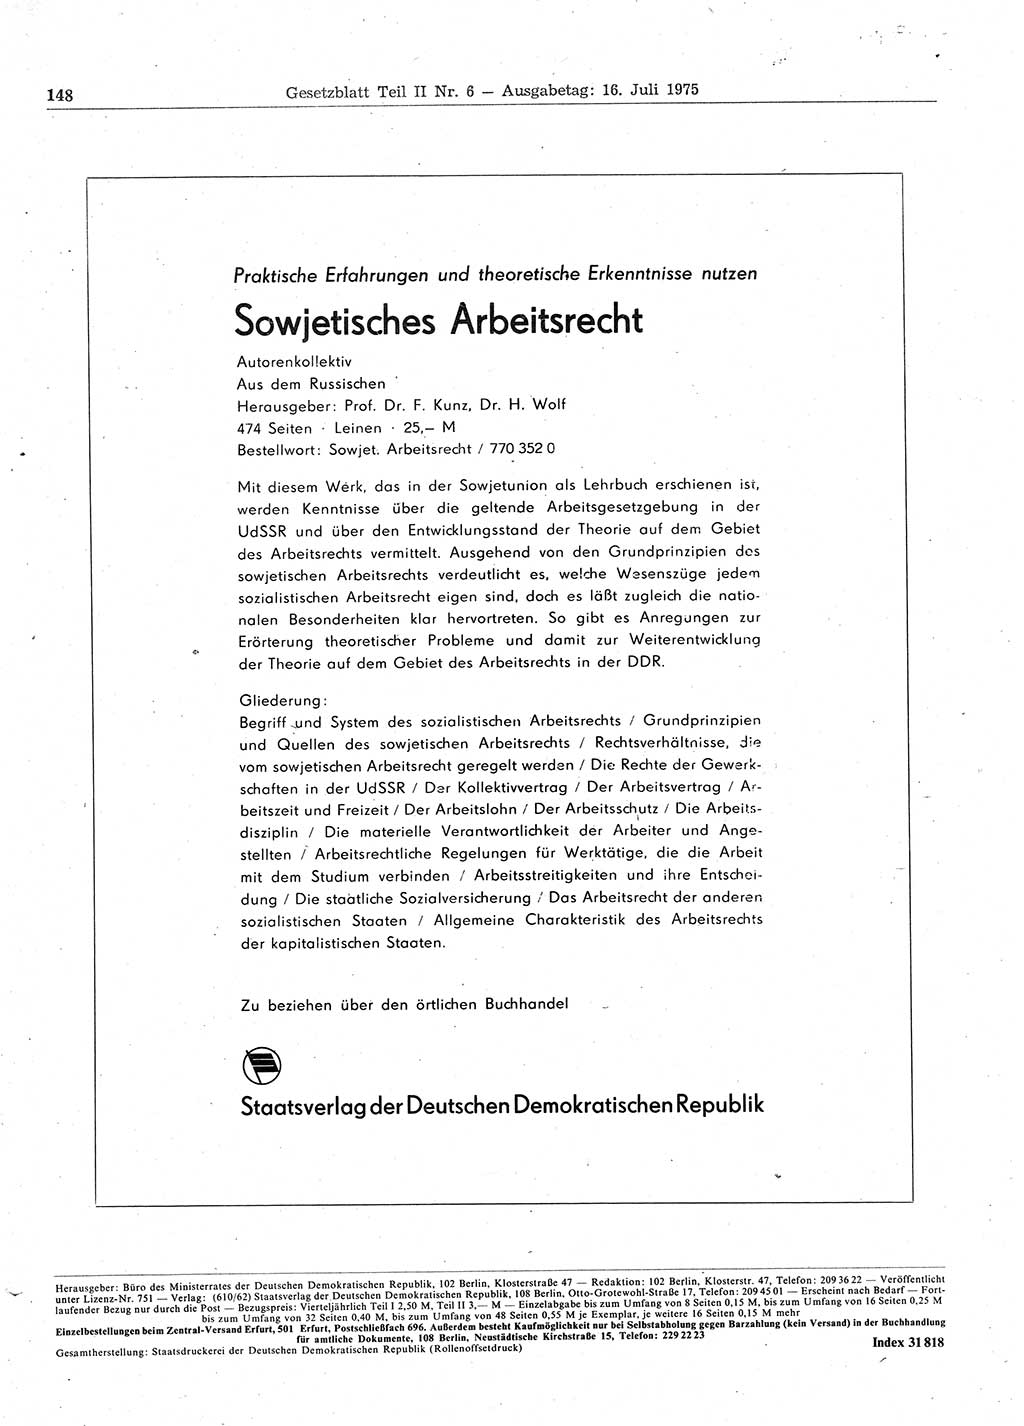 Gesetzblatt (GBl.) der Deutschen Demokratischen Republik (DDR) Teil ⅠⅠ 1975, Seite 148 (GBl. DDR ⅠⅠ 1975, S. 148)